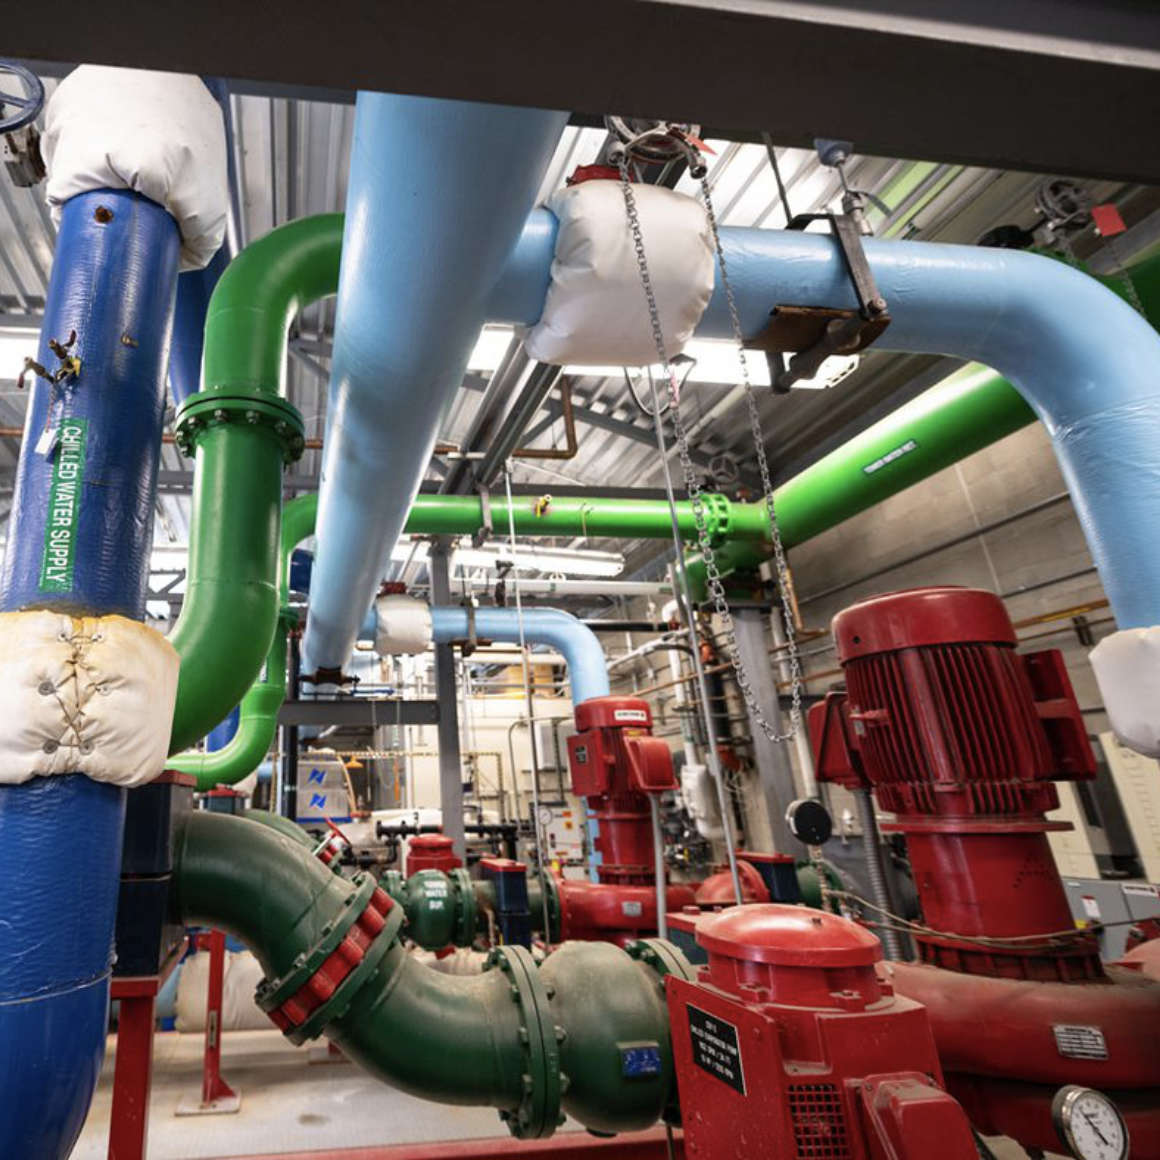 University of Idaho Utility System Project image